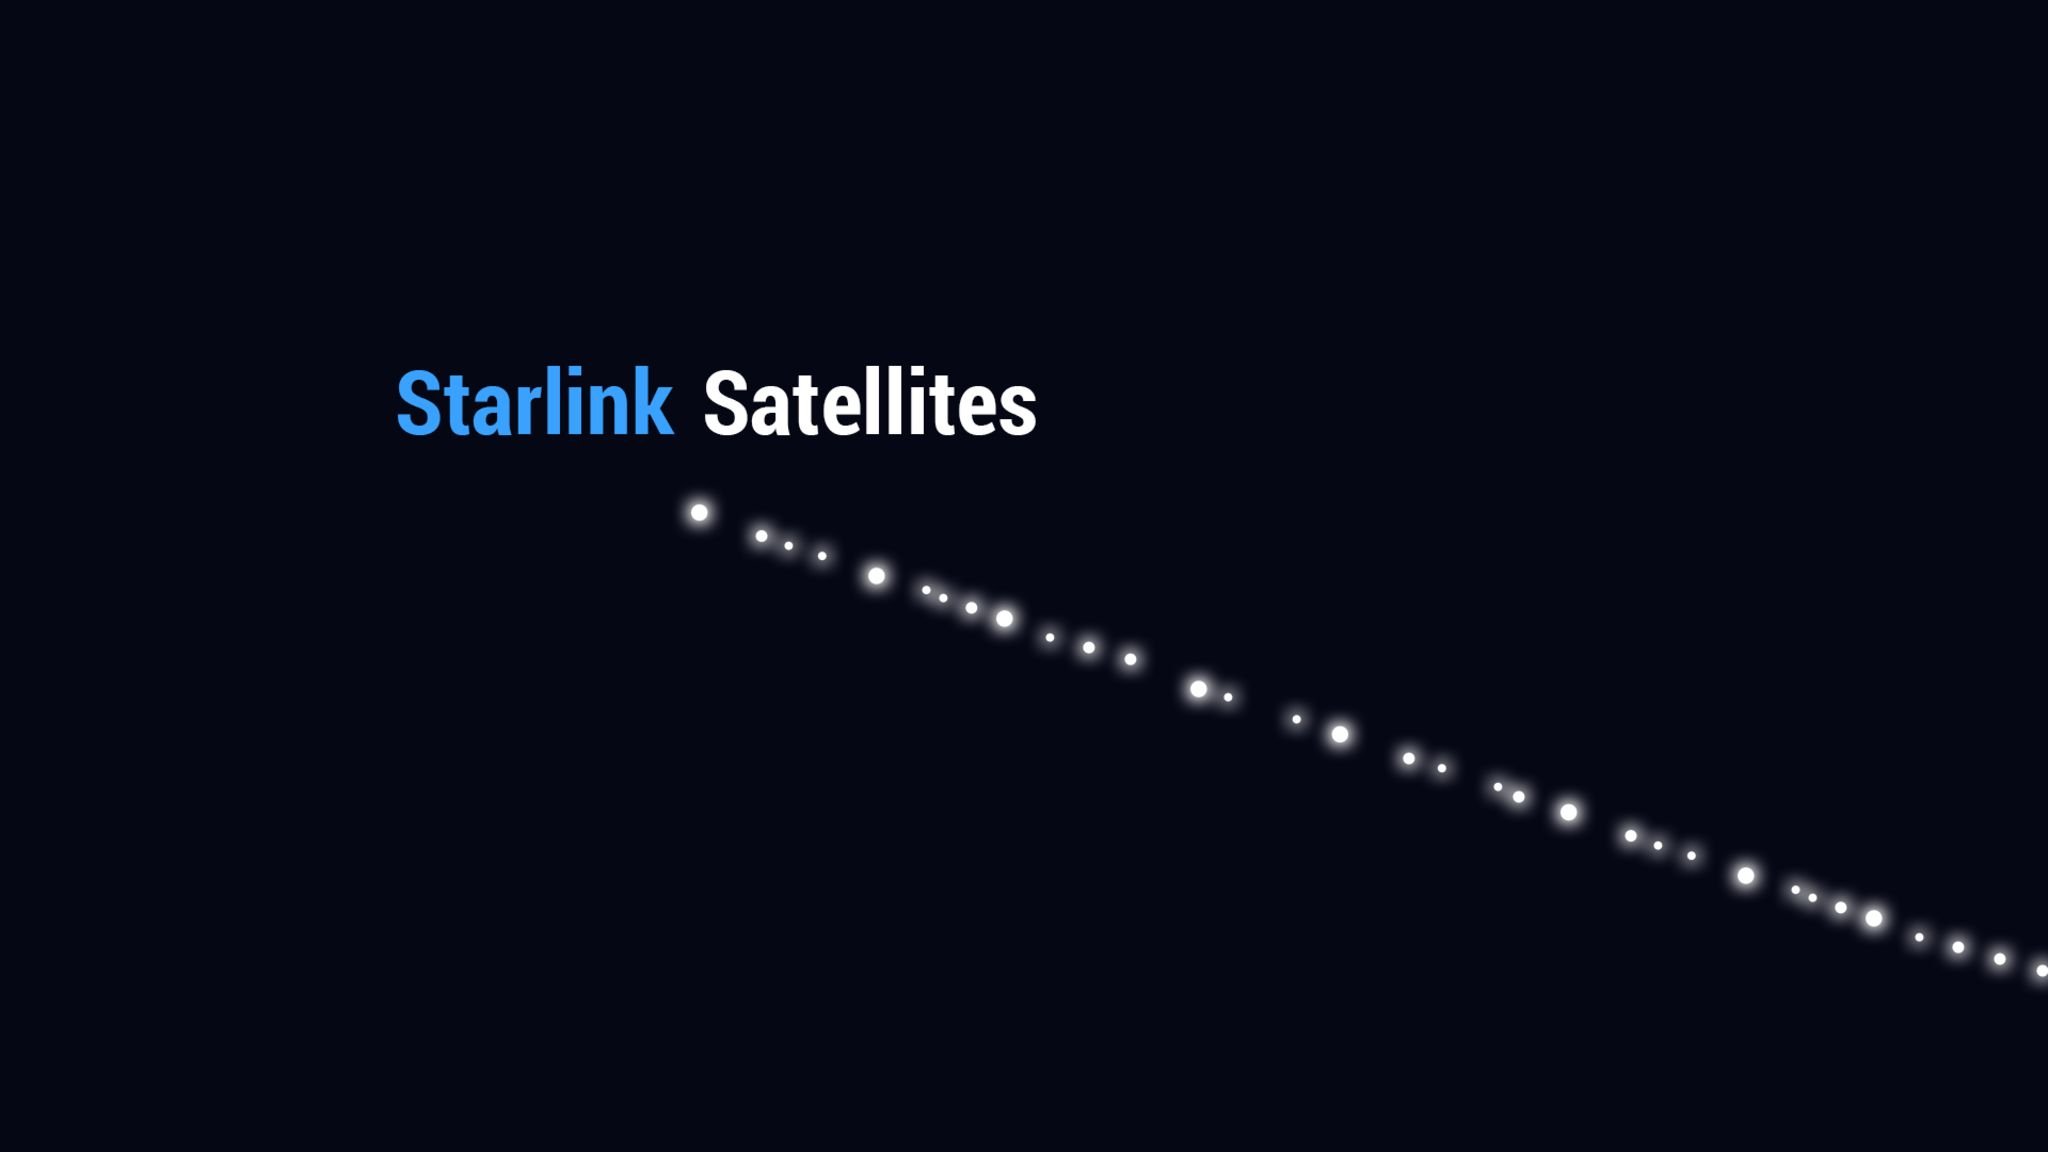  La ce oră poți vedea sateliții Starlink pe cer, în funcție de locul în care te afli